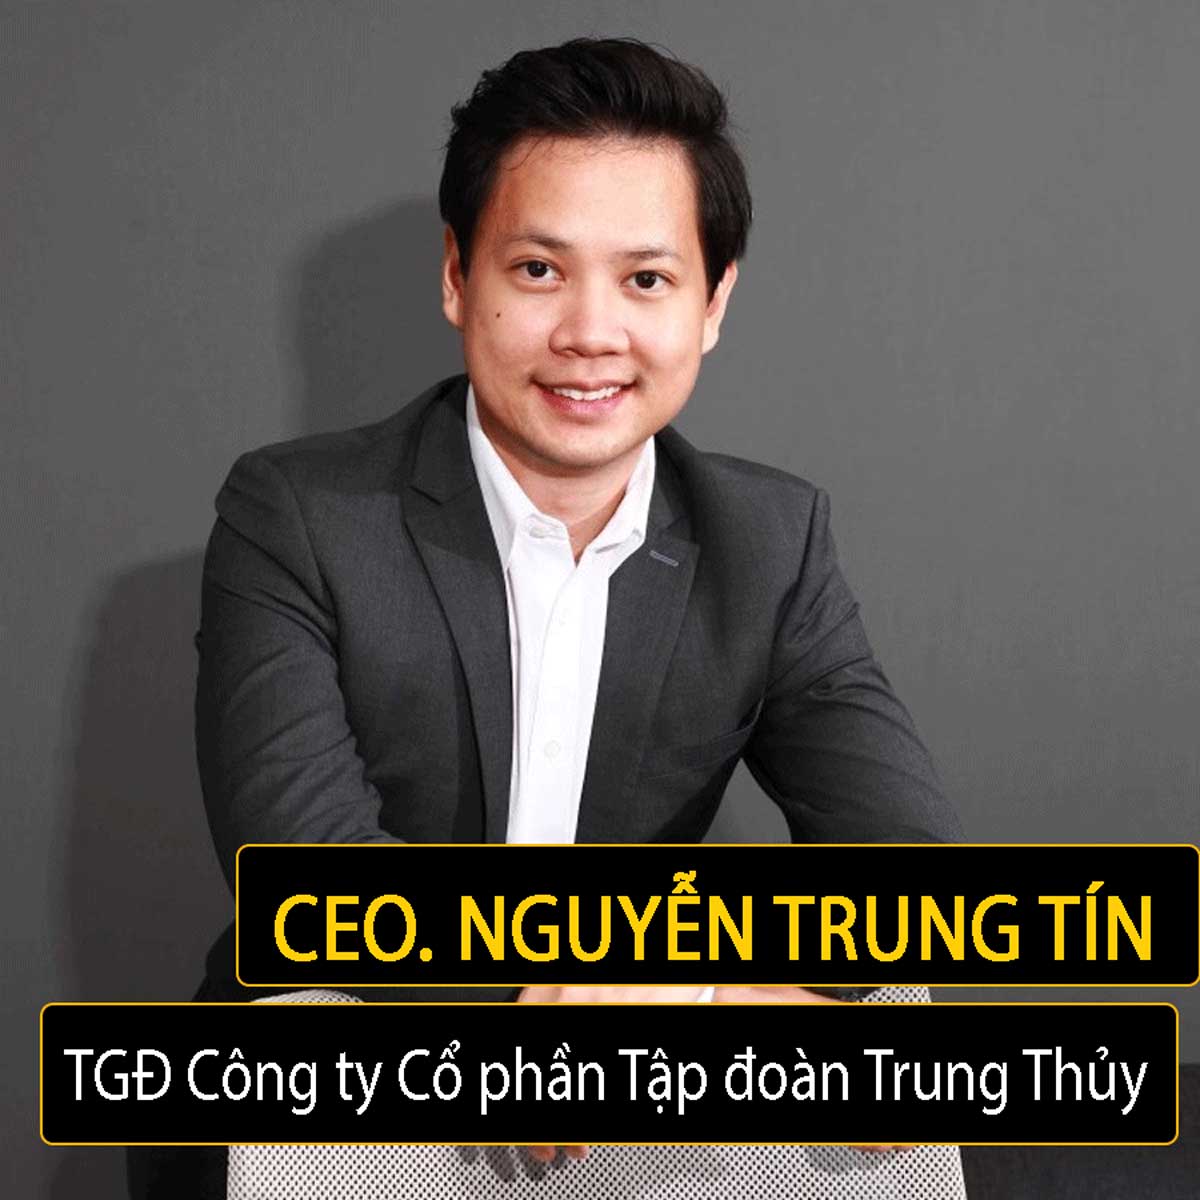 Ông Nguyễn Trung Tín hiện là CEO của Trung Thuỷ Group